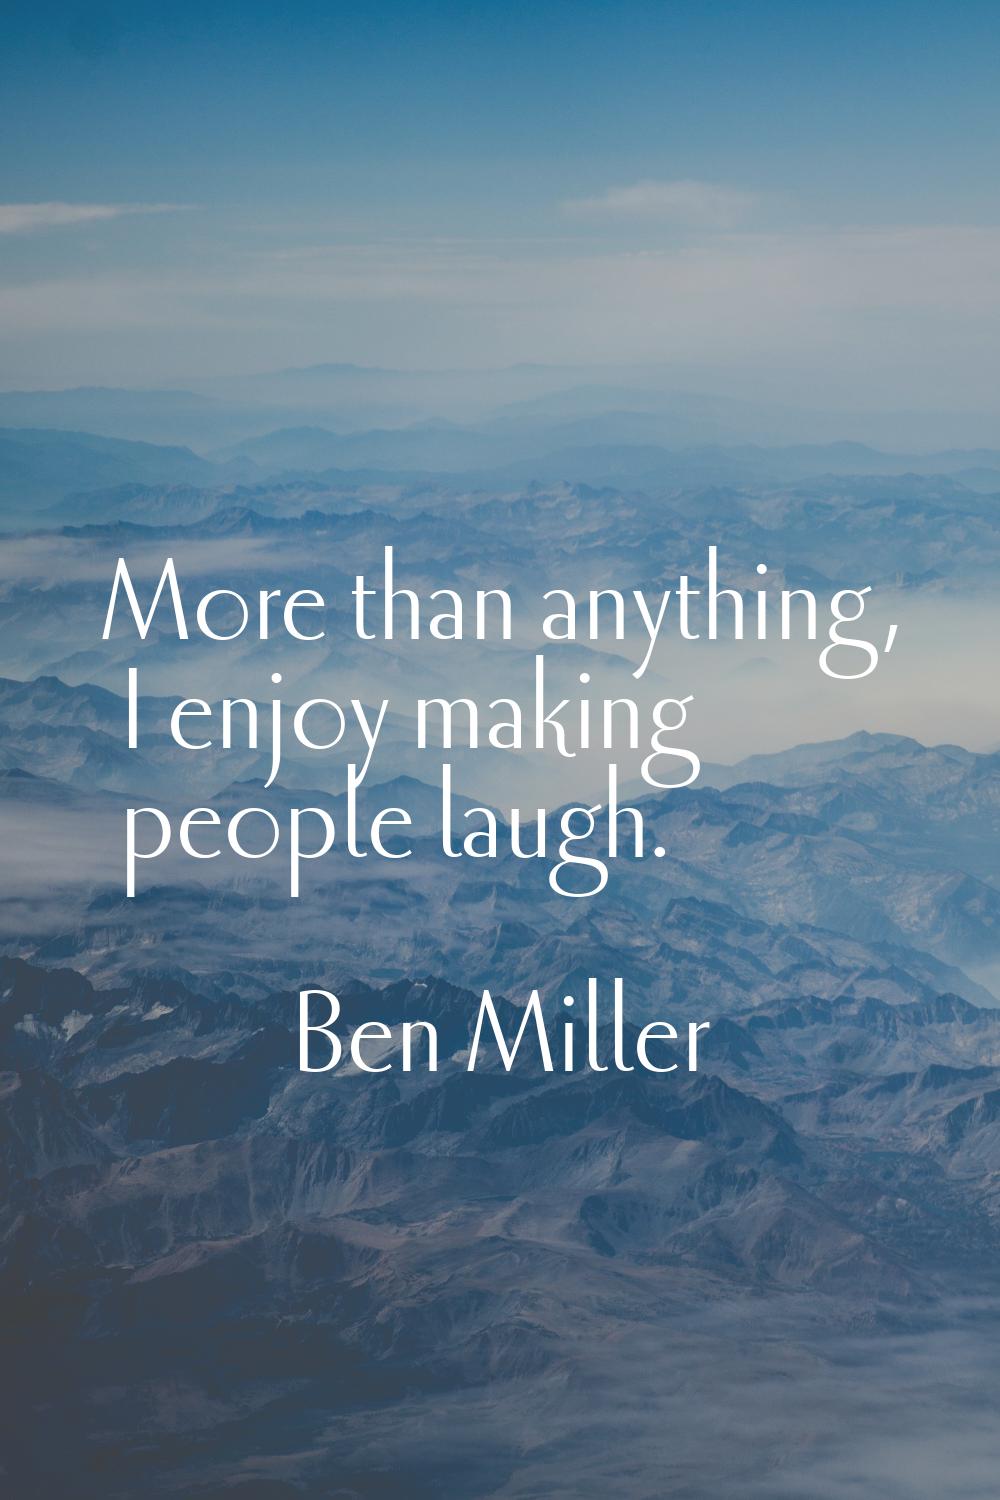 More than anything, I enjoy making people laugh.